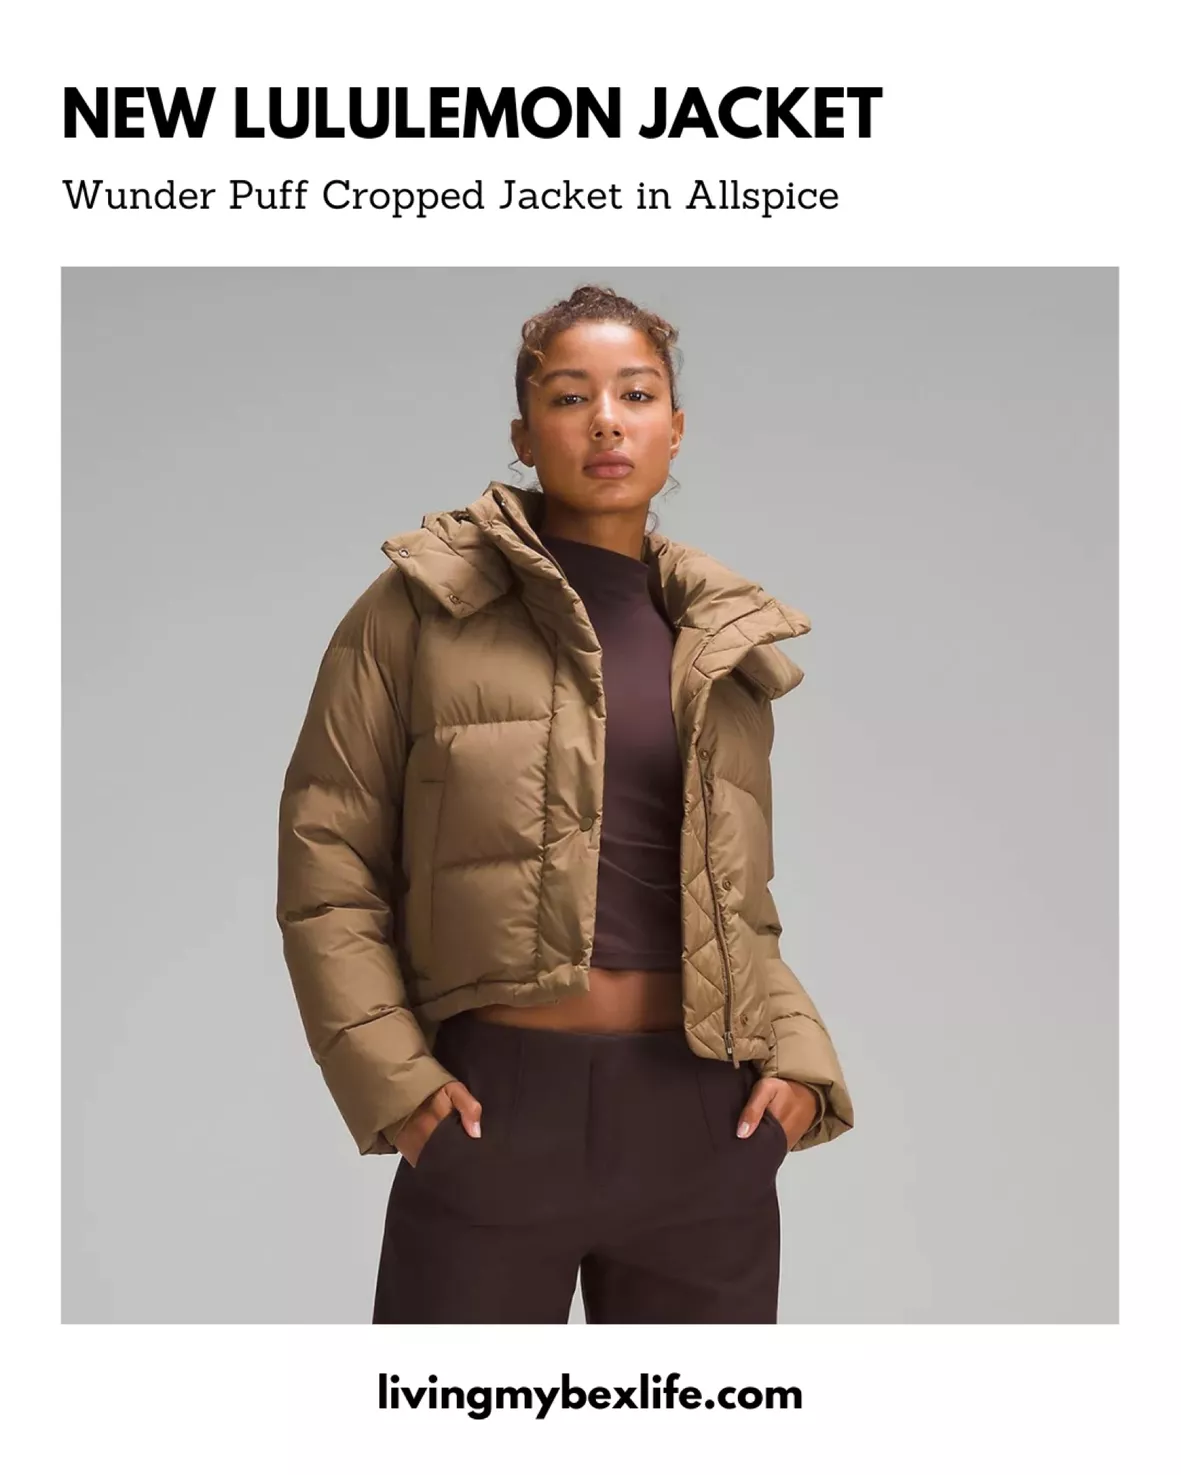 Lululemon Wunder Puff Cropped Jacket - Allspice